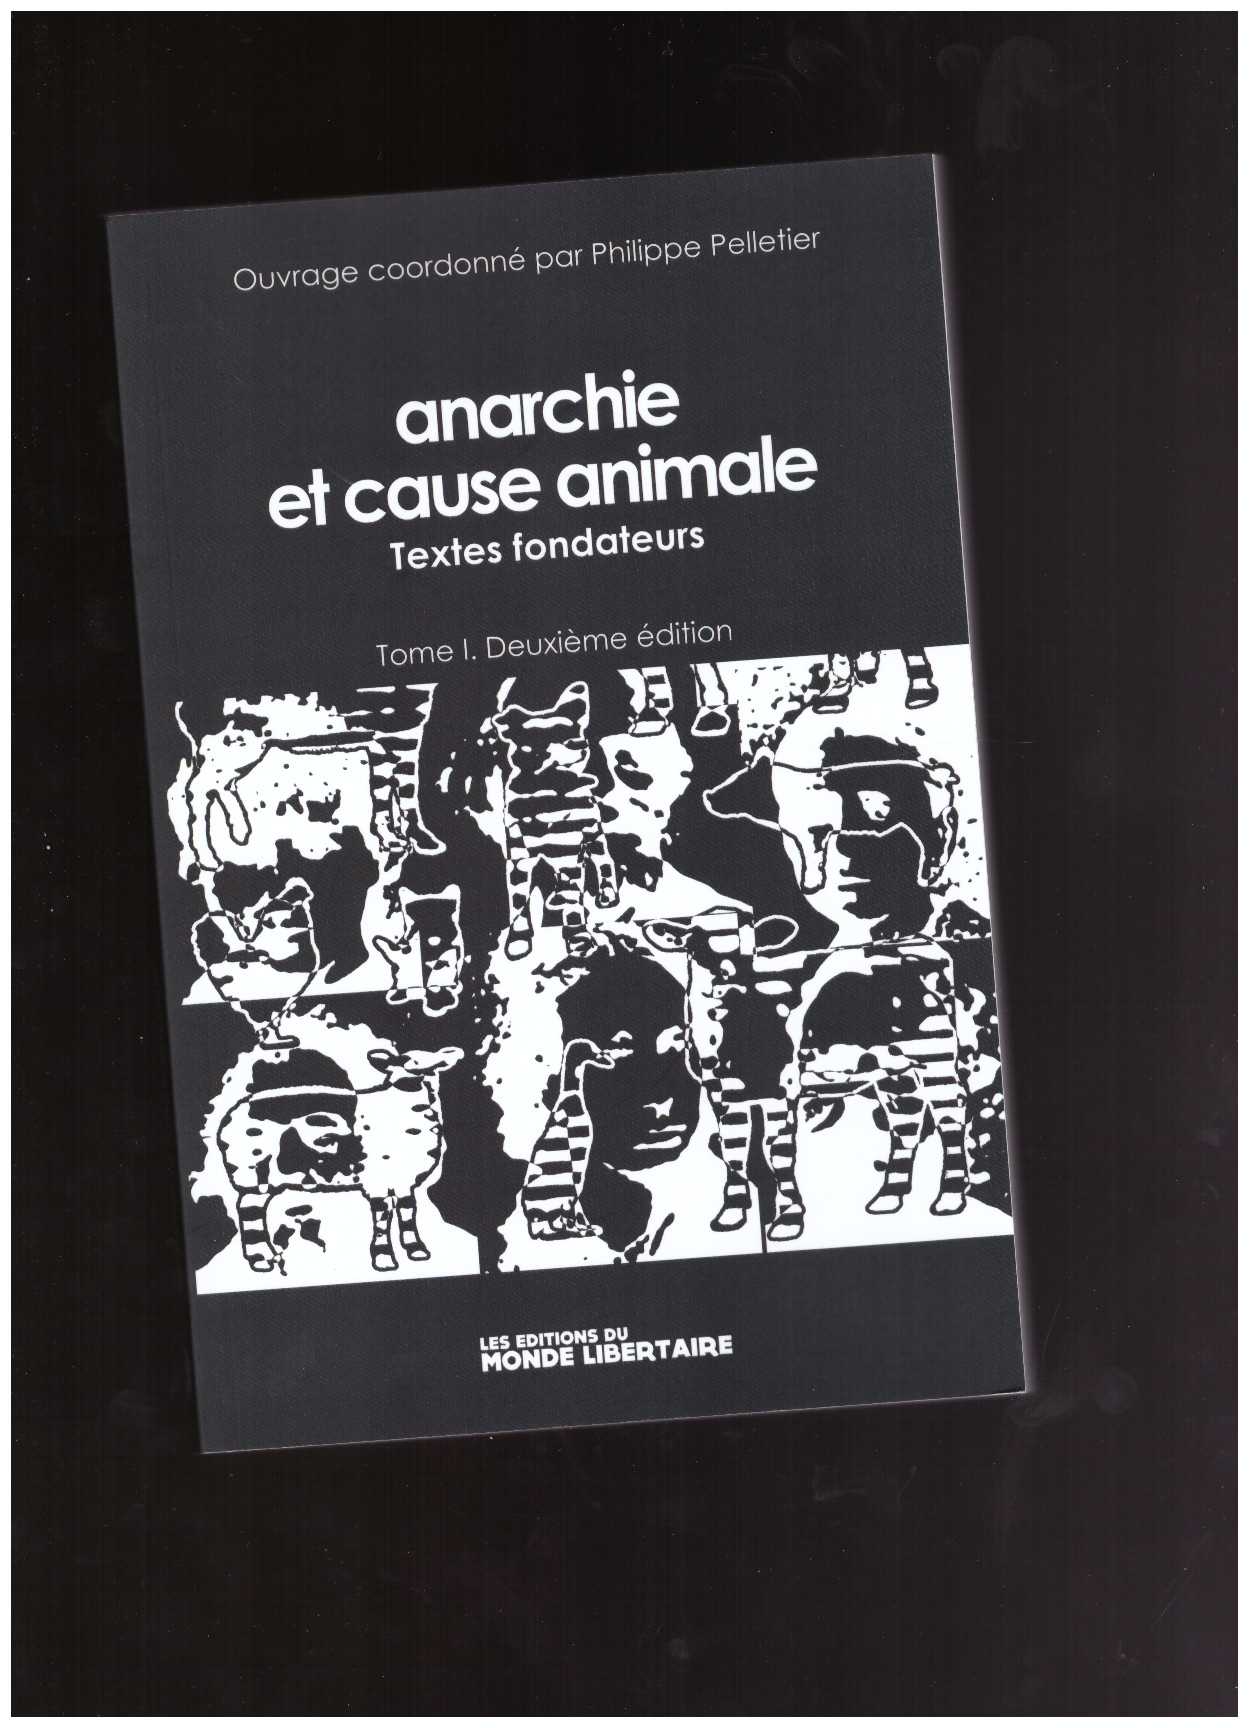 PELLETIER, Philippe (ed.) - Anarchie et cause animale: Textes fondateurs (Tome 1)